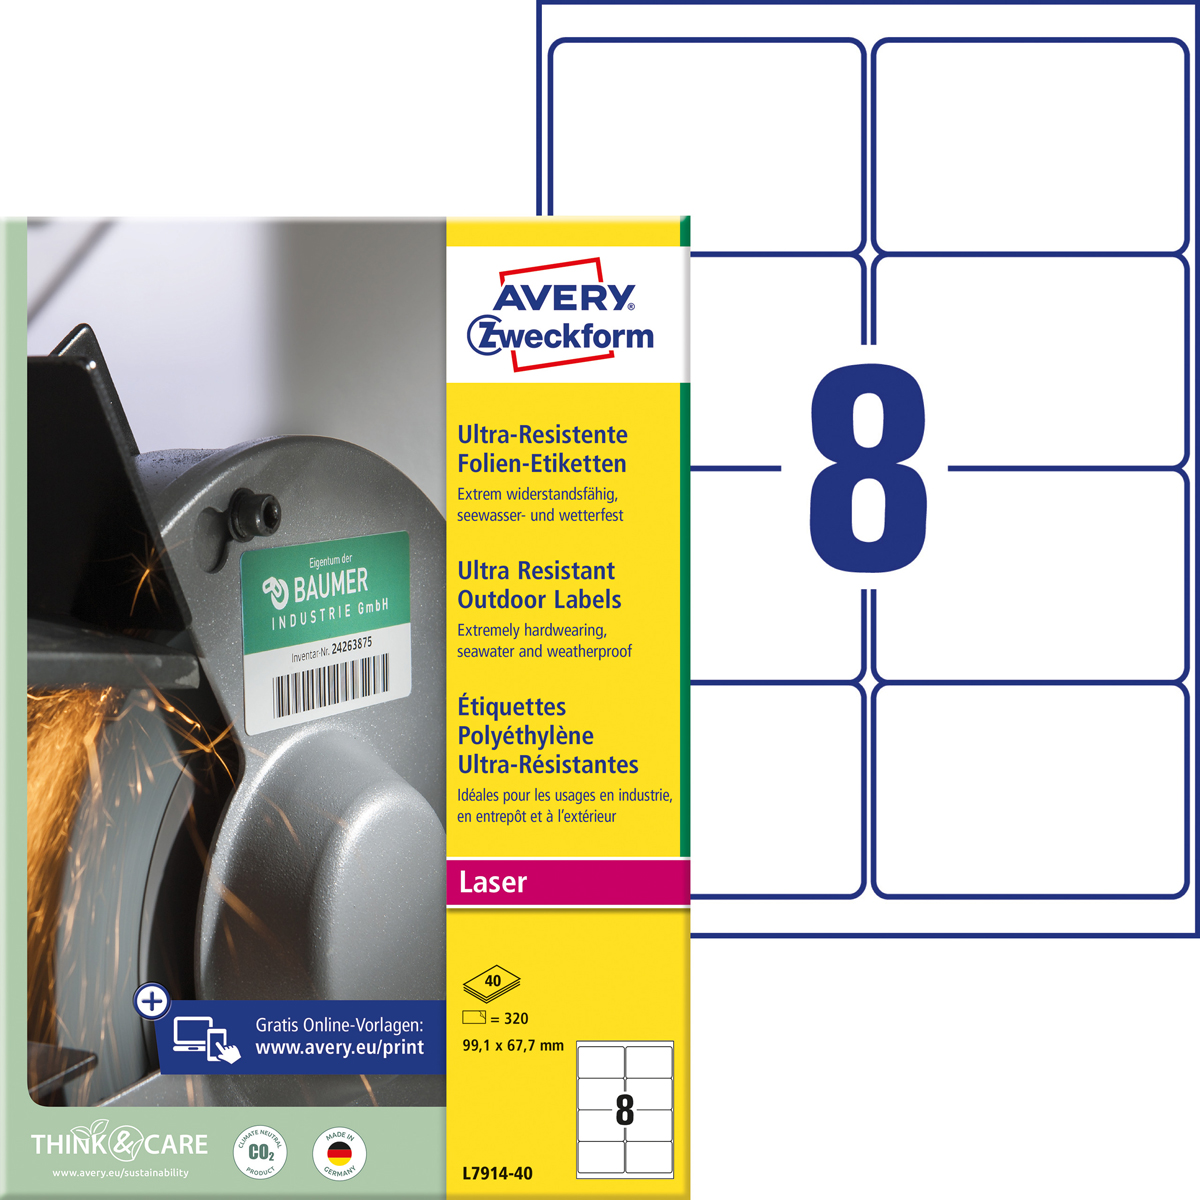 Avery Zweckform L7914-40 Ultra-Resistente, Folien-Etiketten, 99,1 x 67,7 mm, 40 Blatt/320